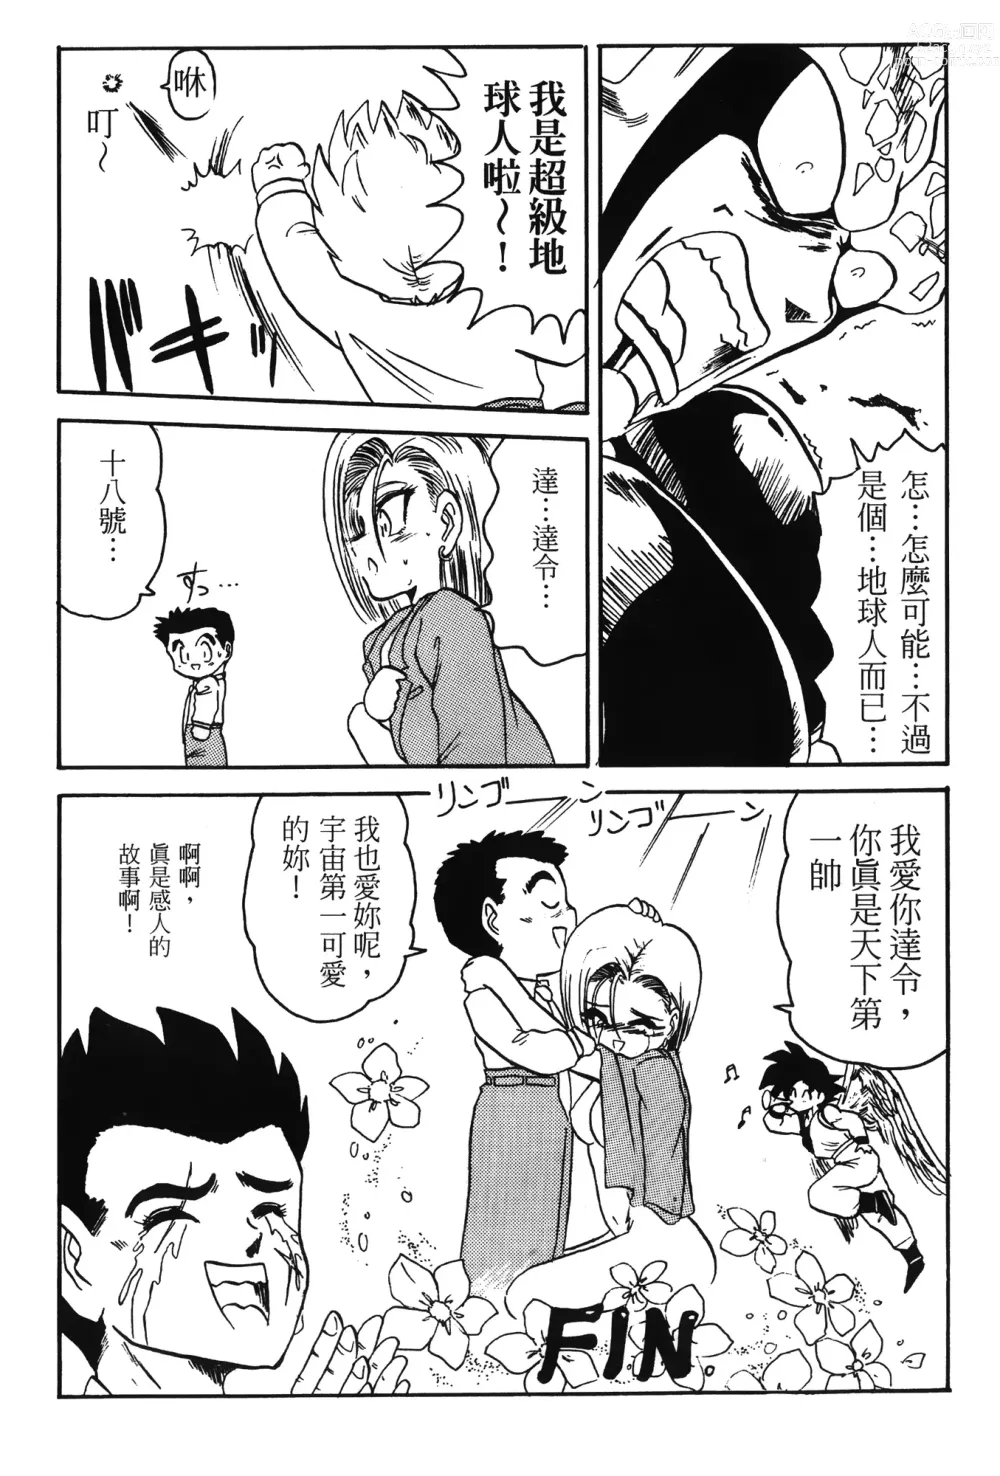 Page 158 of doujinshi ドラゴンパール 01